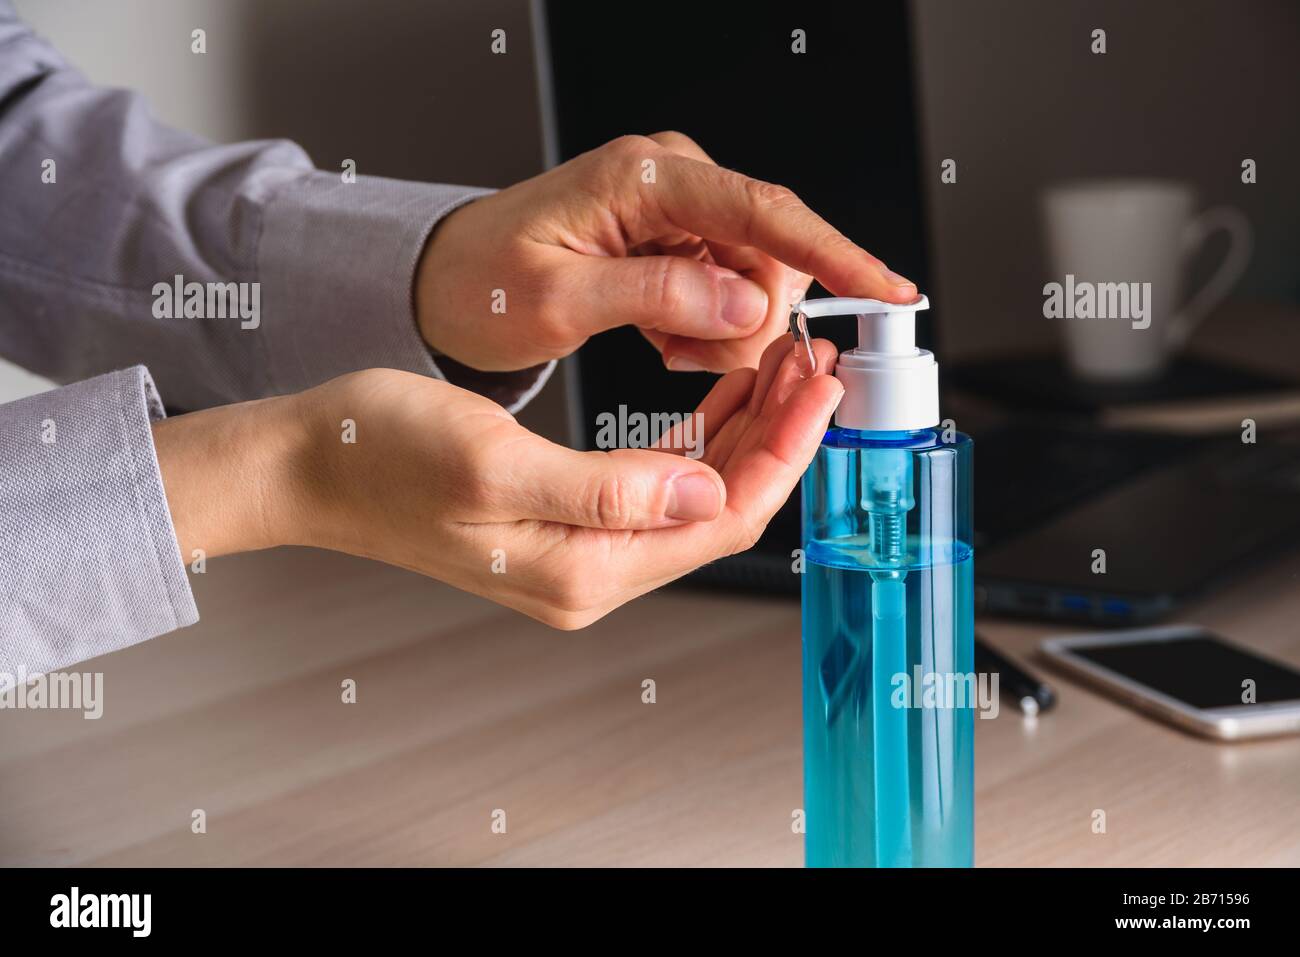 Utilisation de l'aseptisant Pour Les Mains sur le lieu de travail. Concept d'hygiène personnelle Banque D'Images